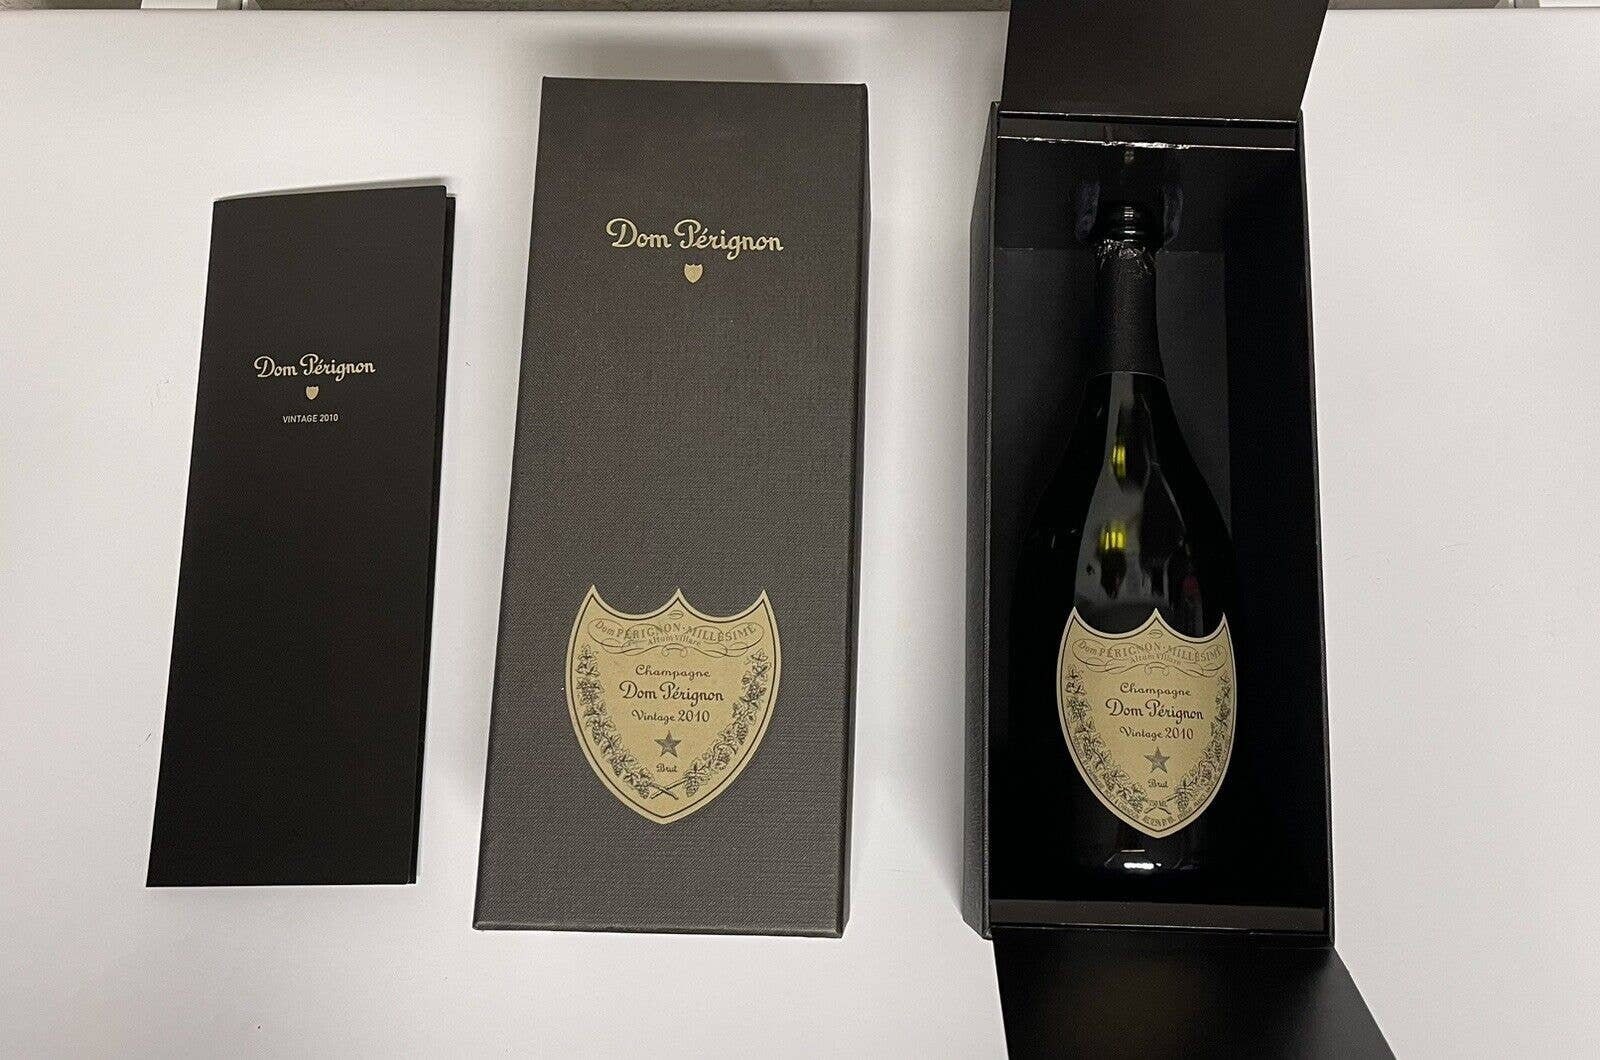 2010 Dom Perignon x Lady Gaga Edition Brut 750mL - Wally's Wine & Spirits